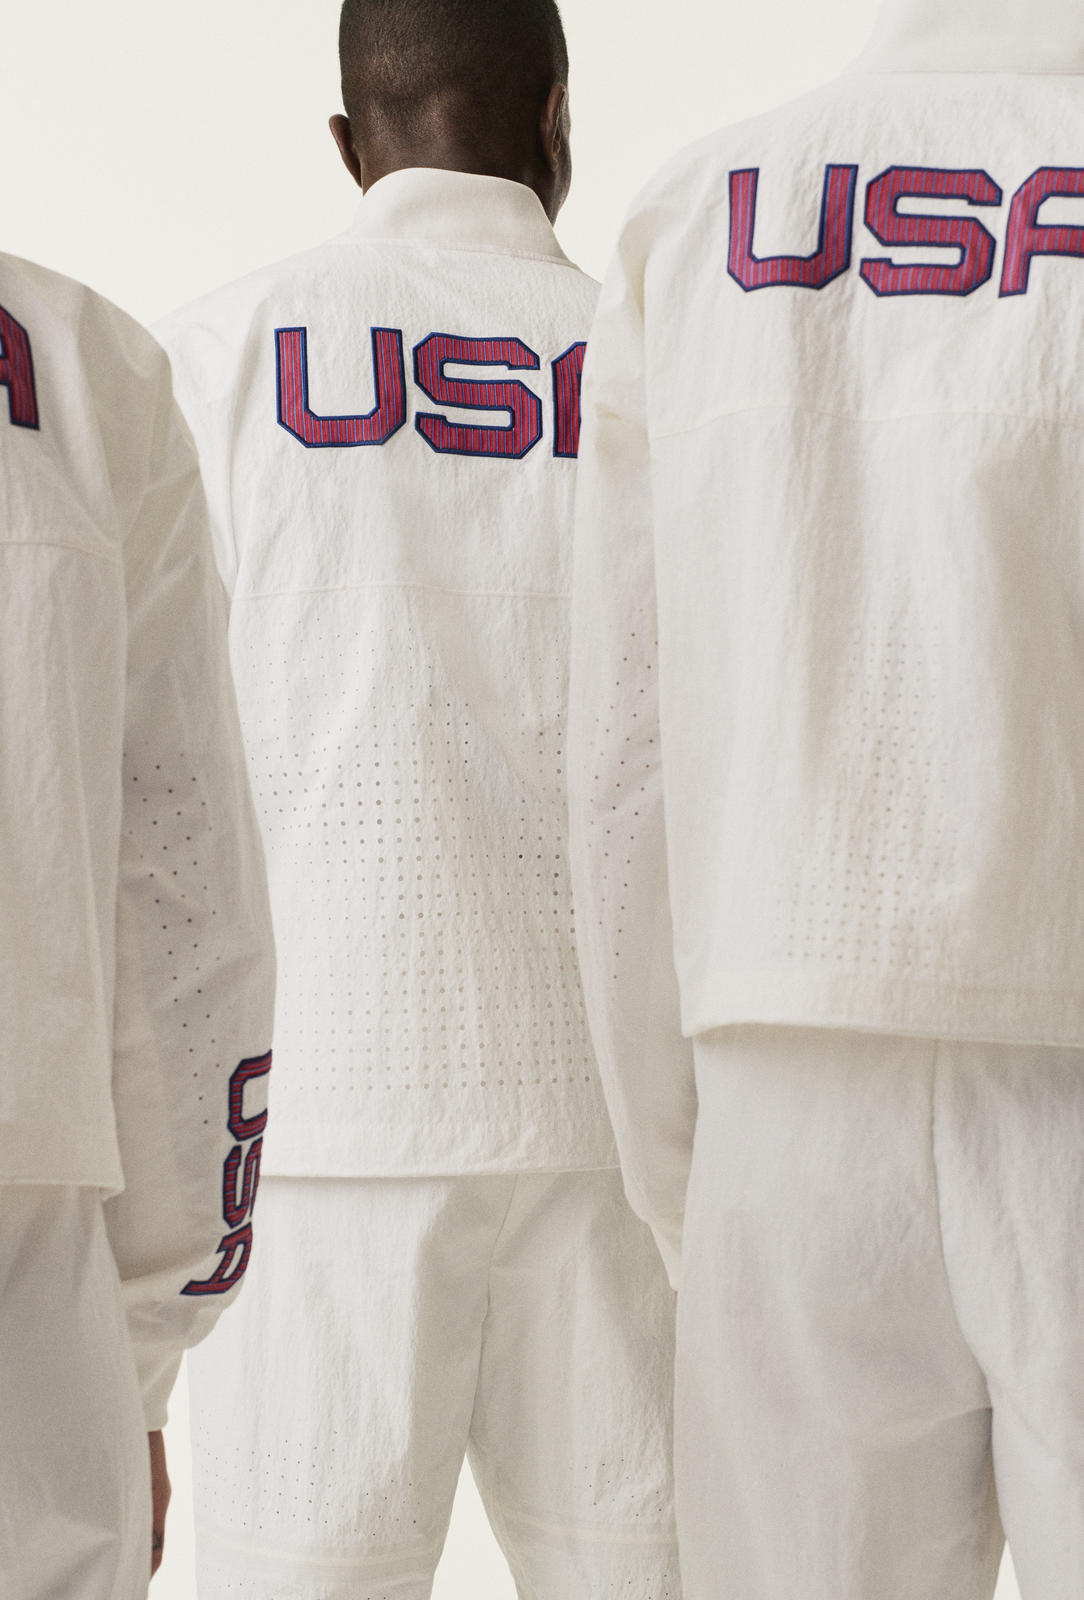 Nike、環境に配慮した「チームUSA」メダルスタンドコレクション発表 